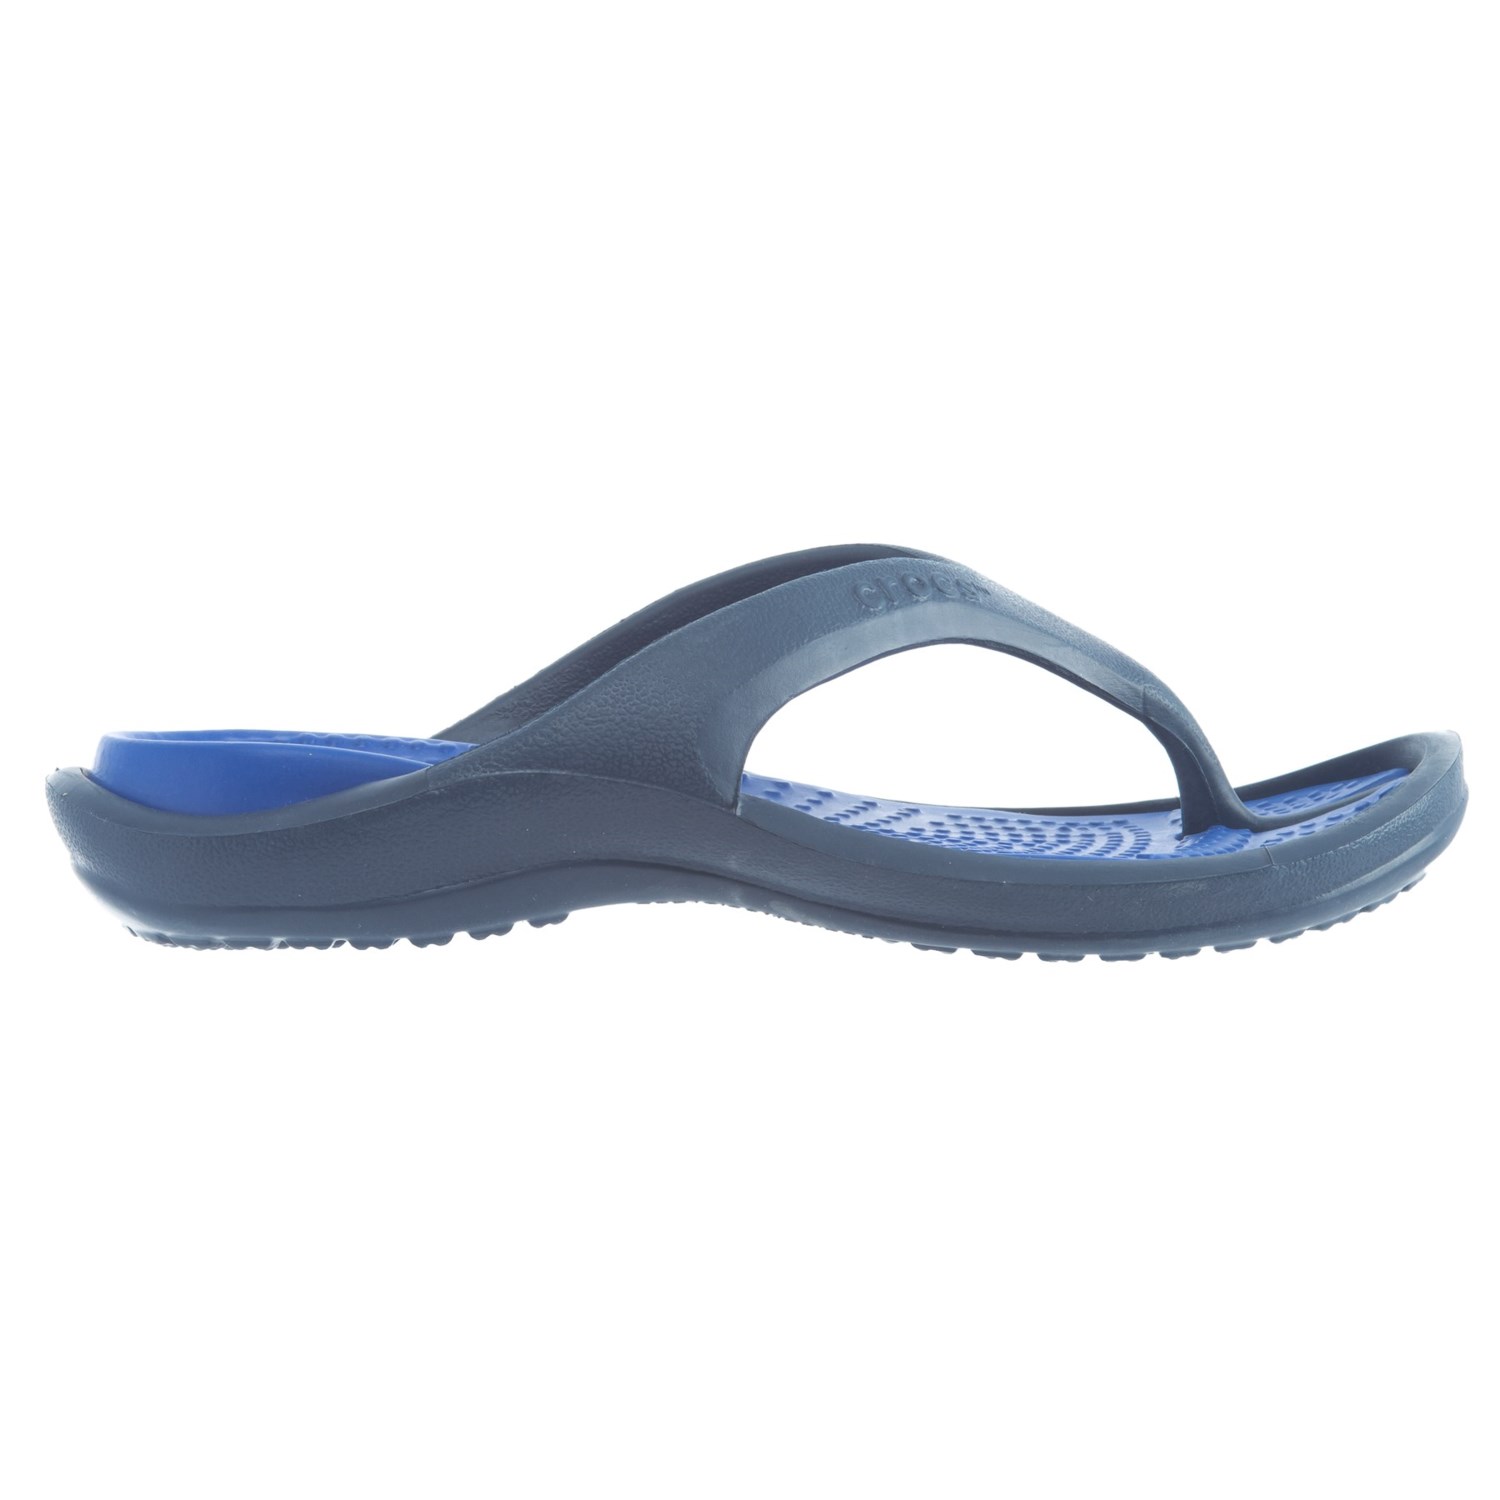 Crocs Athens Croslite® Flip-Flops (For Men) - Save 51%